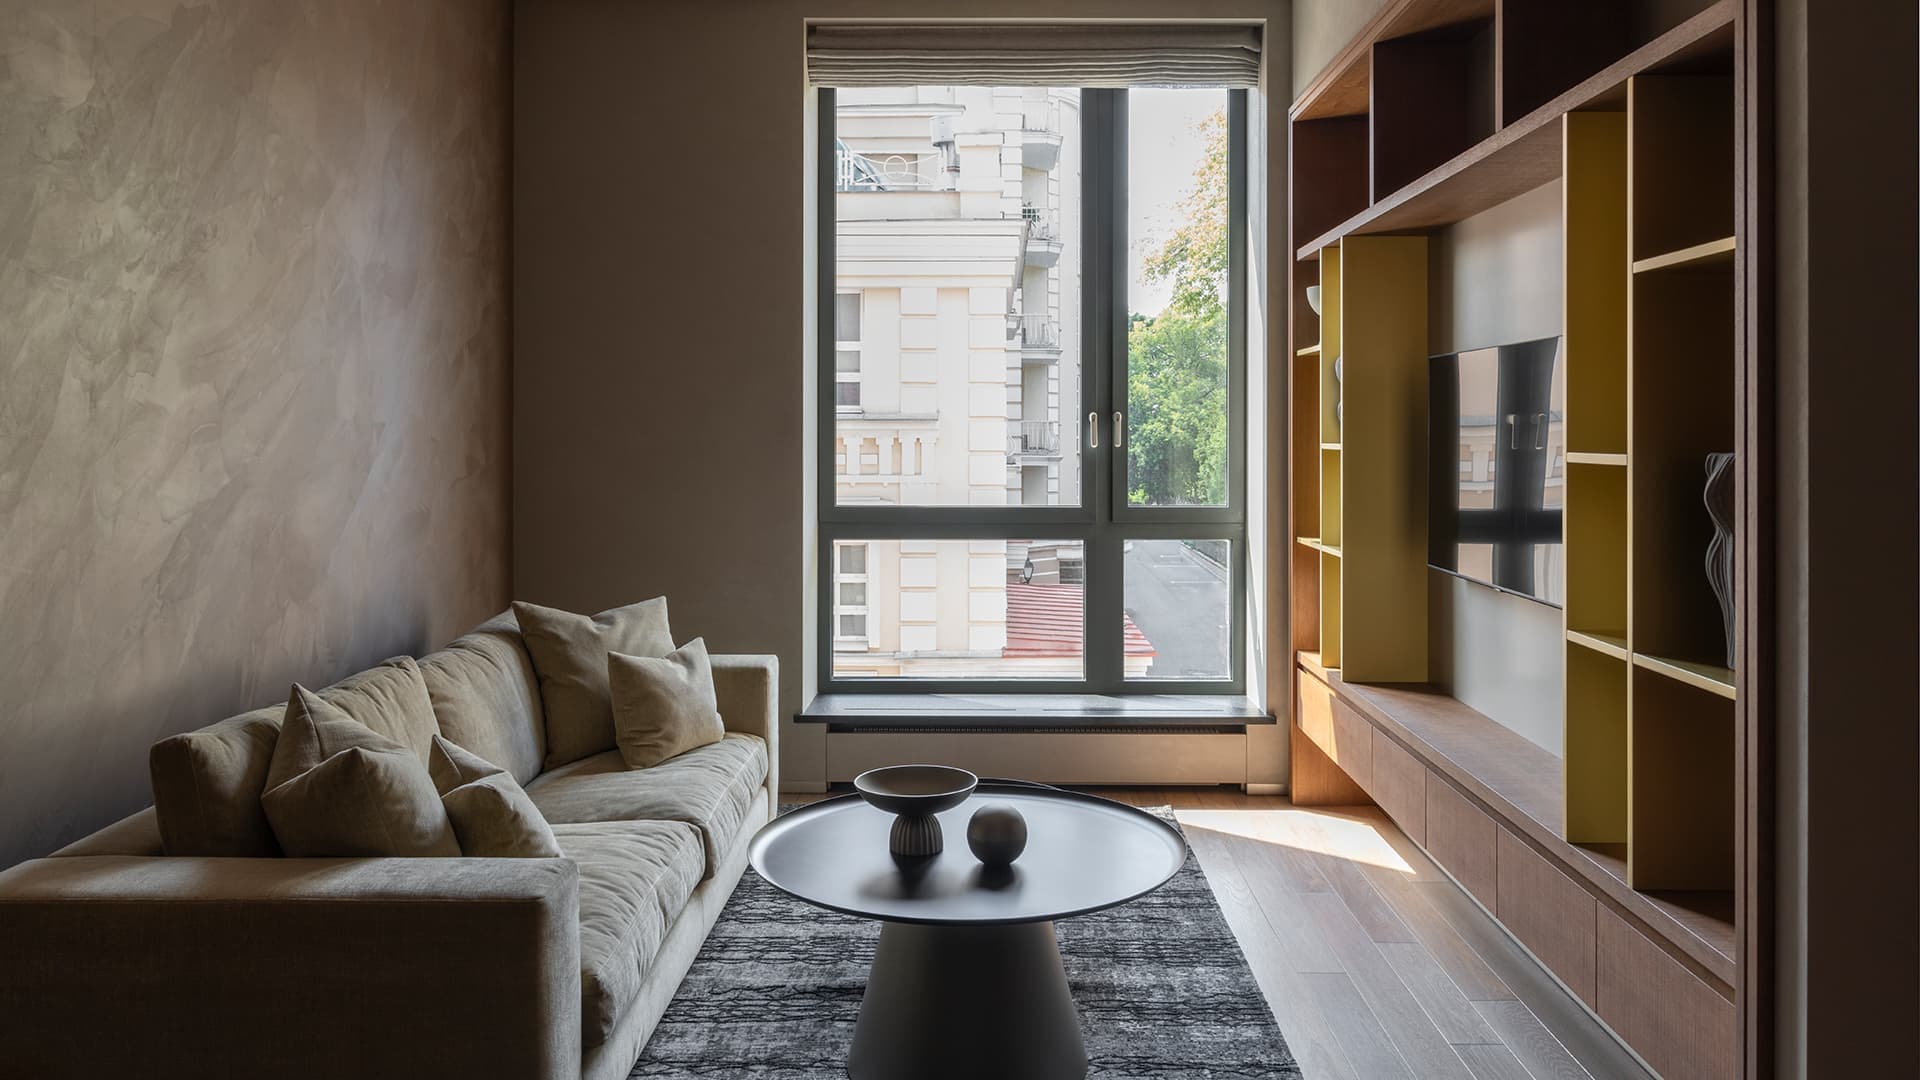 Теплый интерьер с шелковистой штукатуркой и авторской мебелью из шпона дуба — проект Данило Ружичича